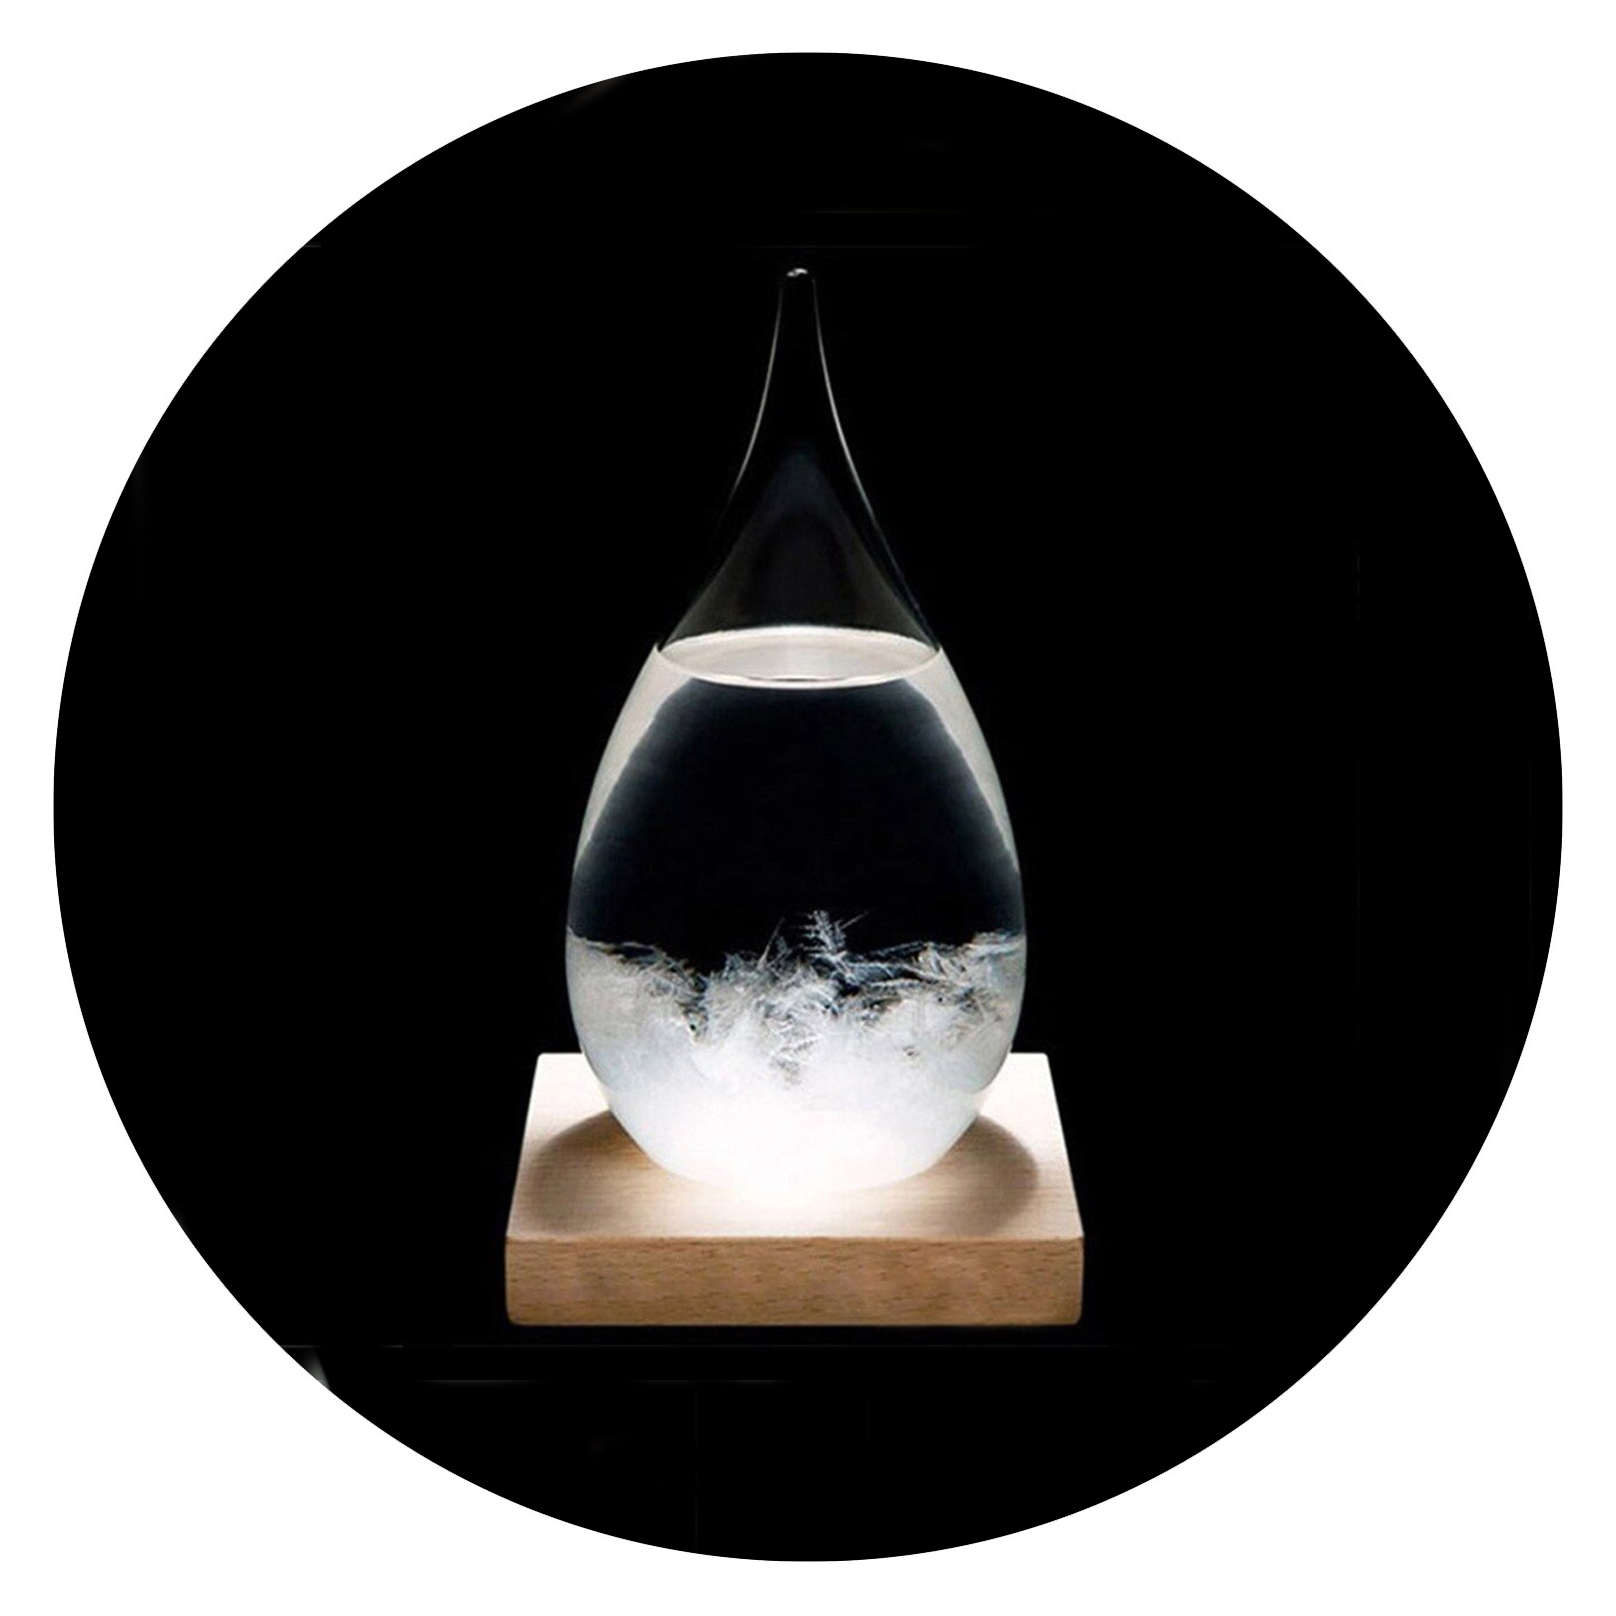 Stormglas in de vorm van een druppel op houten voet